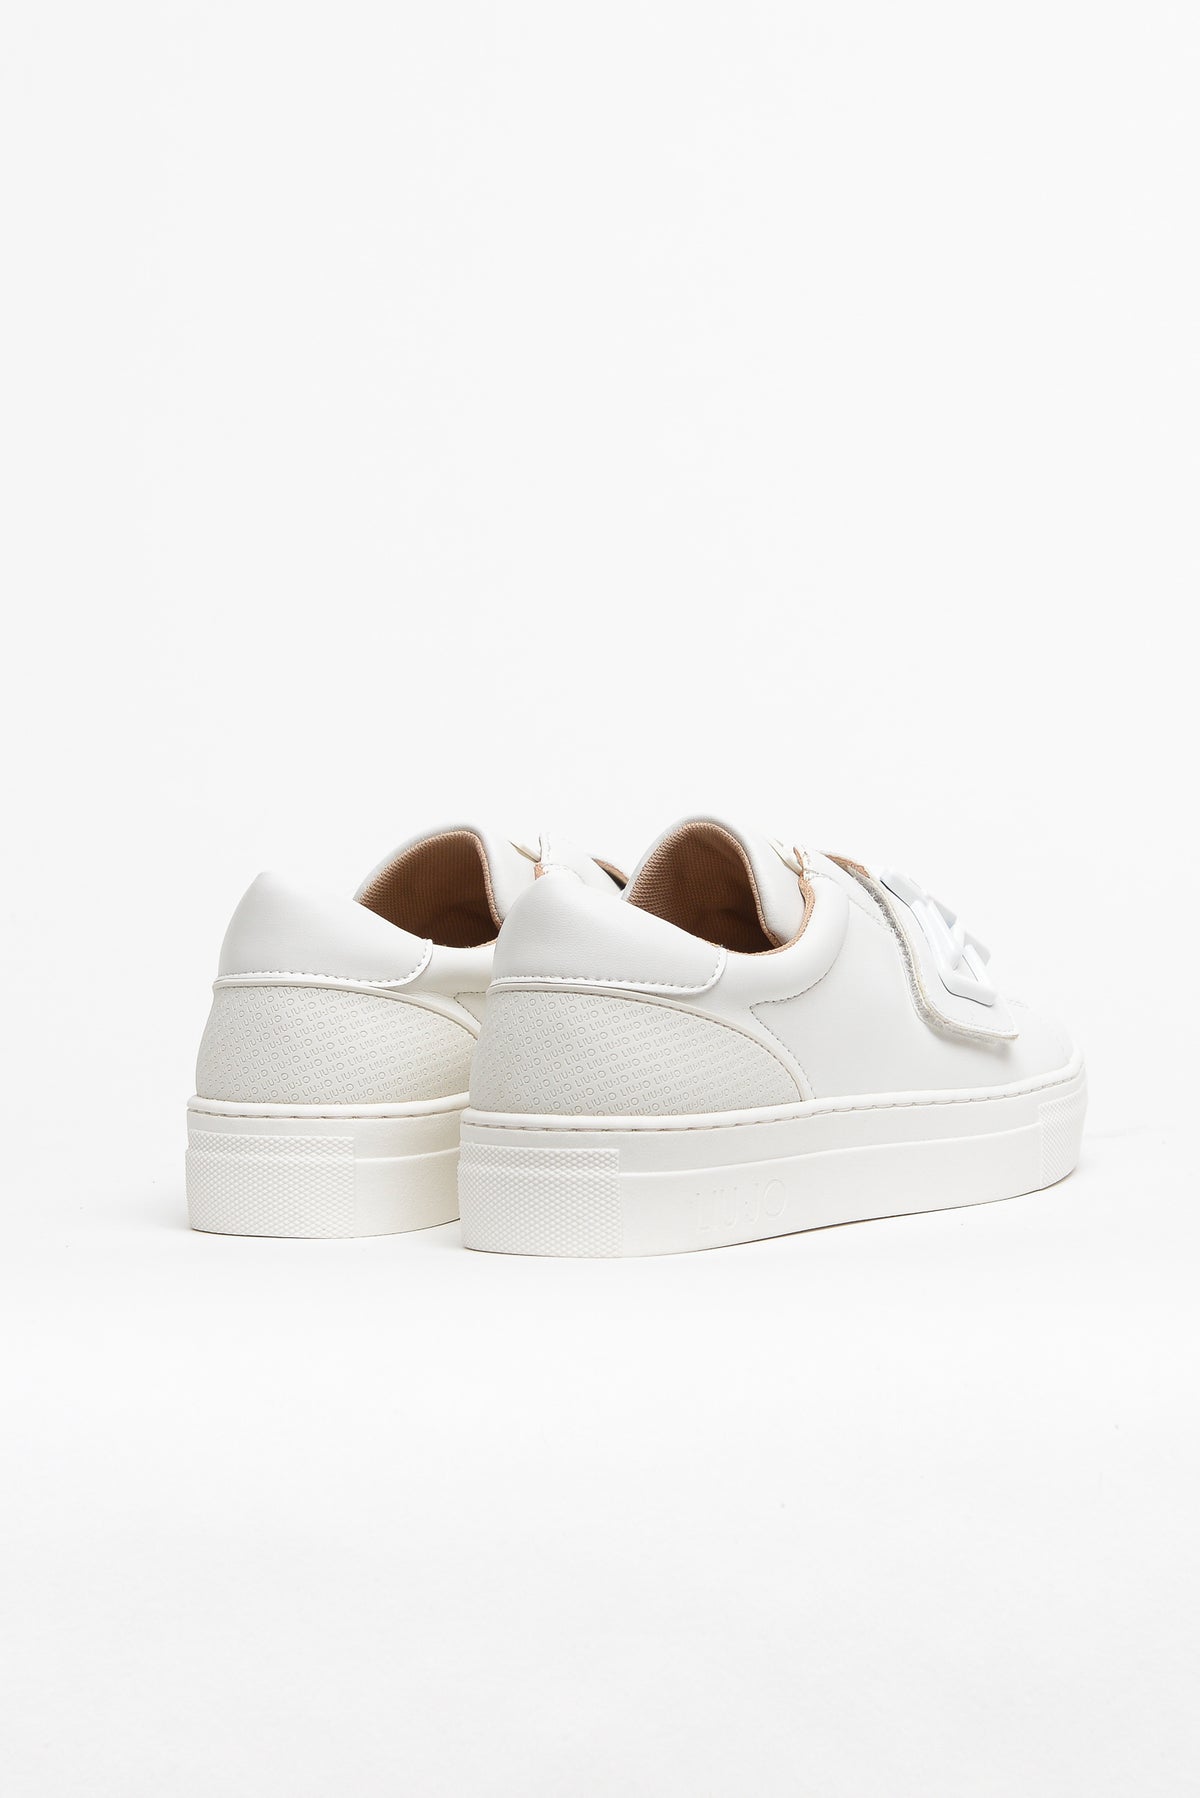 Liu Jo Shoes Sneakers Fdo Cassetta Bianco Bambina - 4